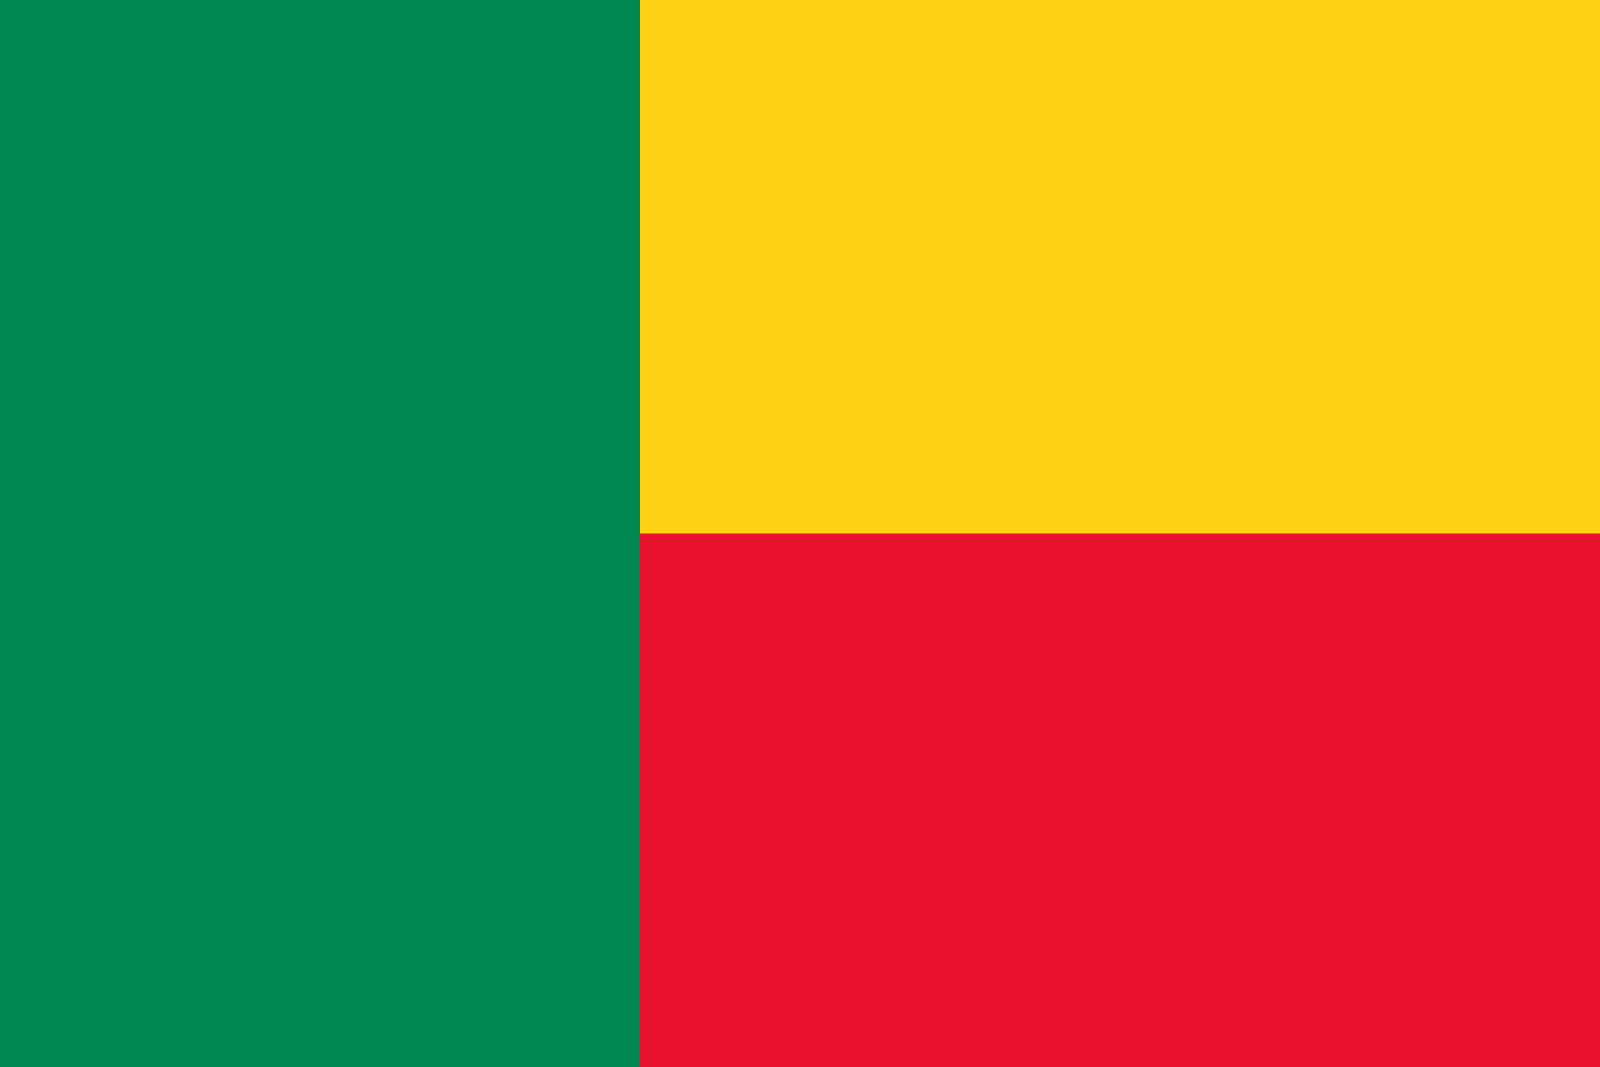 Bild der Staatsflagge Benin - mit einer Auflösung von 1600x1067 - Afrika